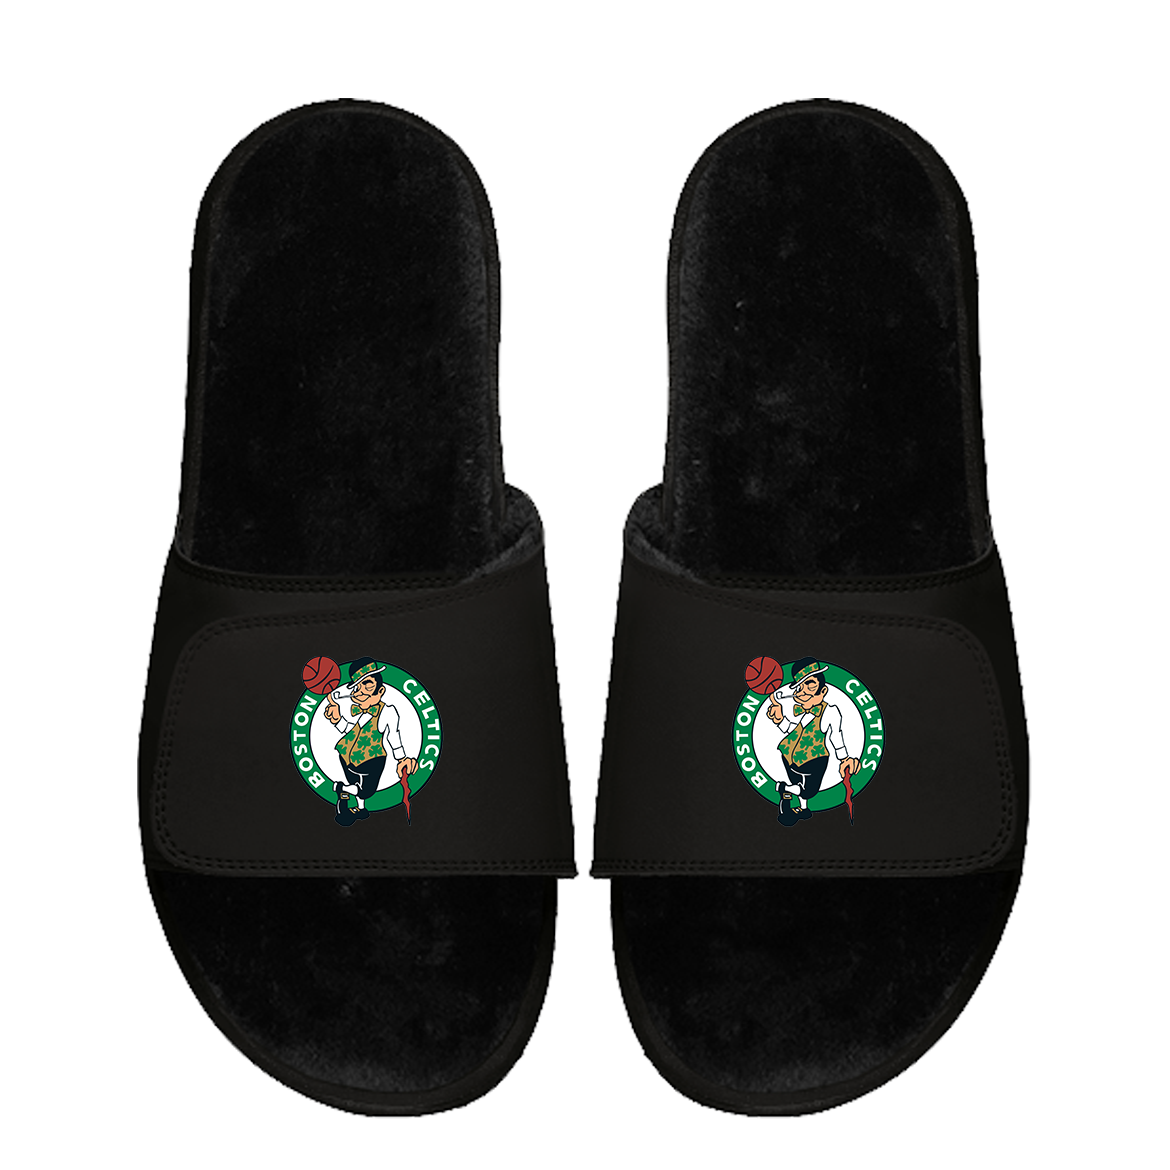 Boston Celtics Primary Black Fur